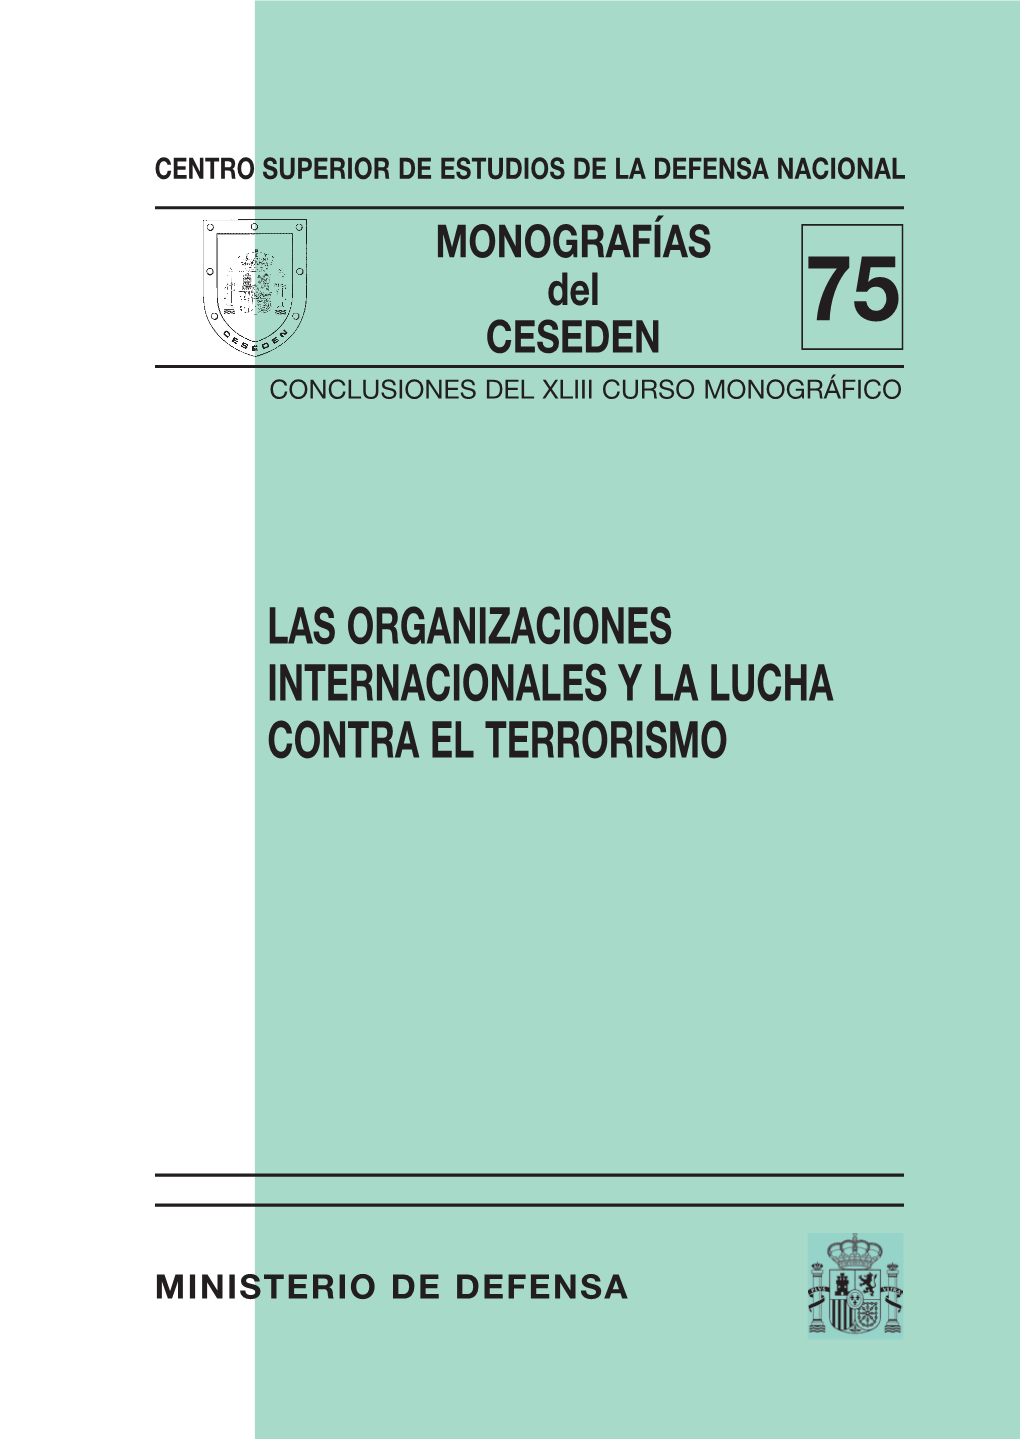 Monografías Del CESEDEN CENTRO SUPERIOR DE ESTUDIOS DE LA DEFENSA NACIONAL MONOGRAFÍAS Del 75 CESEDEN CONCLUSIONES DEL XLIII CURSO MONOGRÁFICO